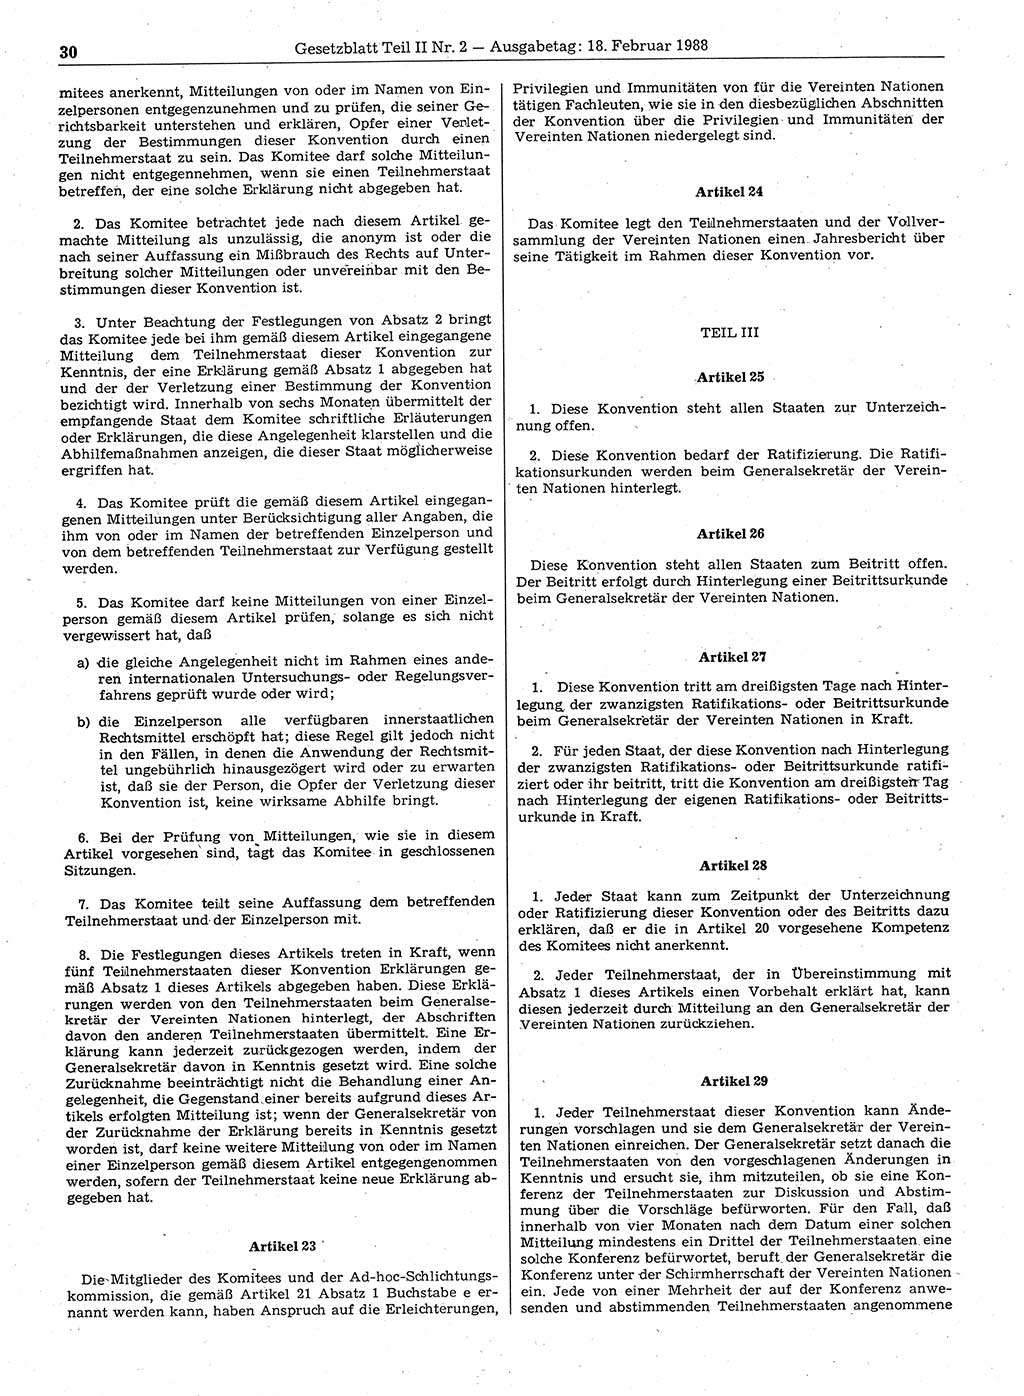 Gesetzblatt (GBl.) der Deutschen Demokratischen Republik (DDR) Teil ⅠⅠ 1988, Seite 30 (GBl. DDR ⅠⅠ 1988, S. 30)